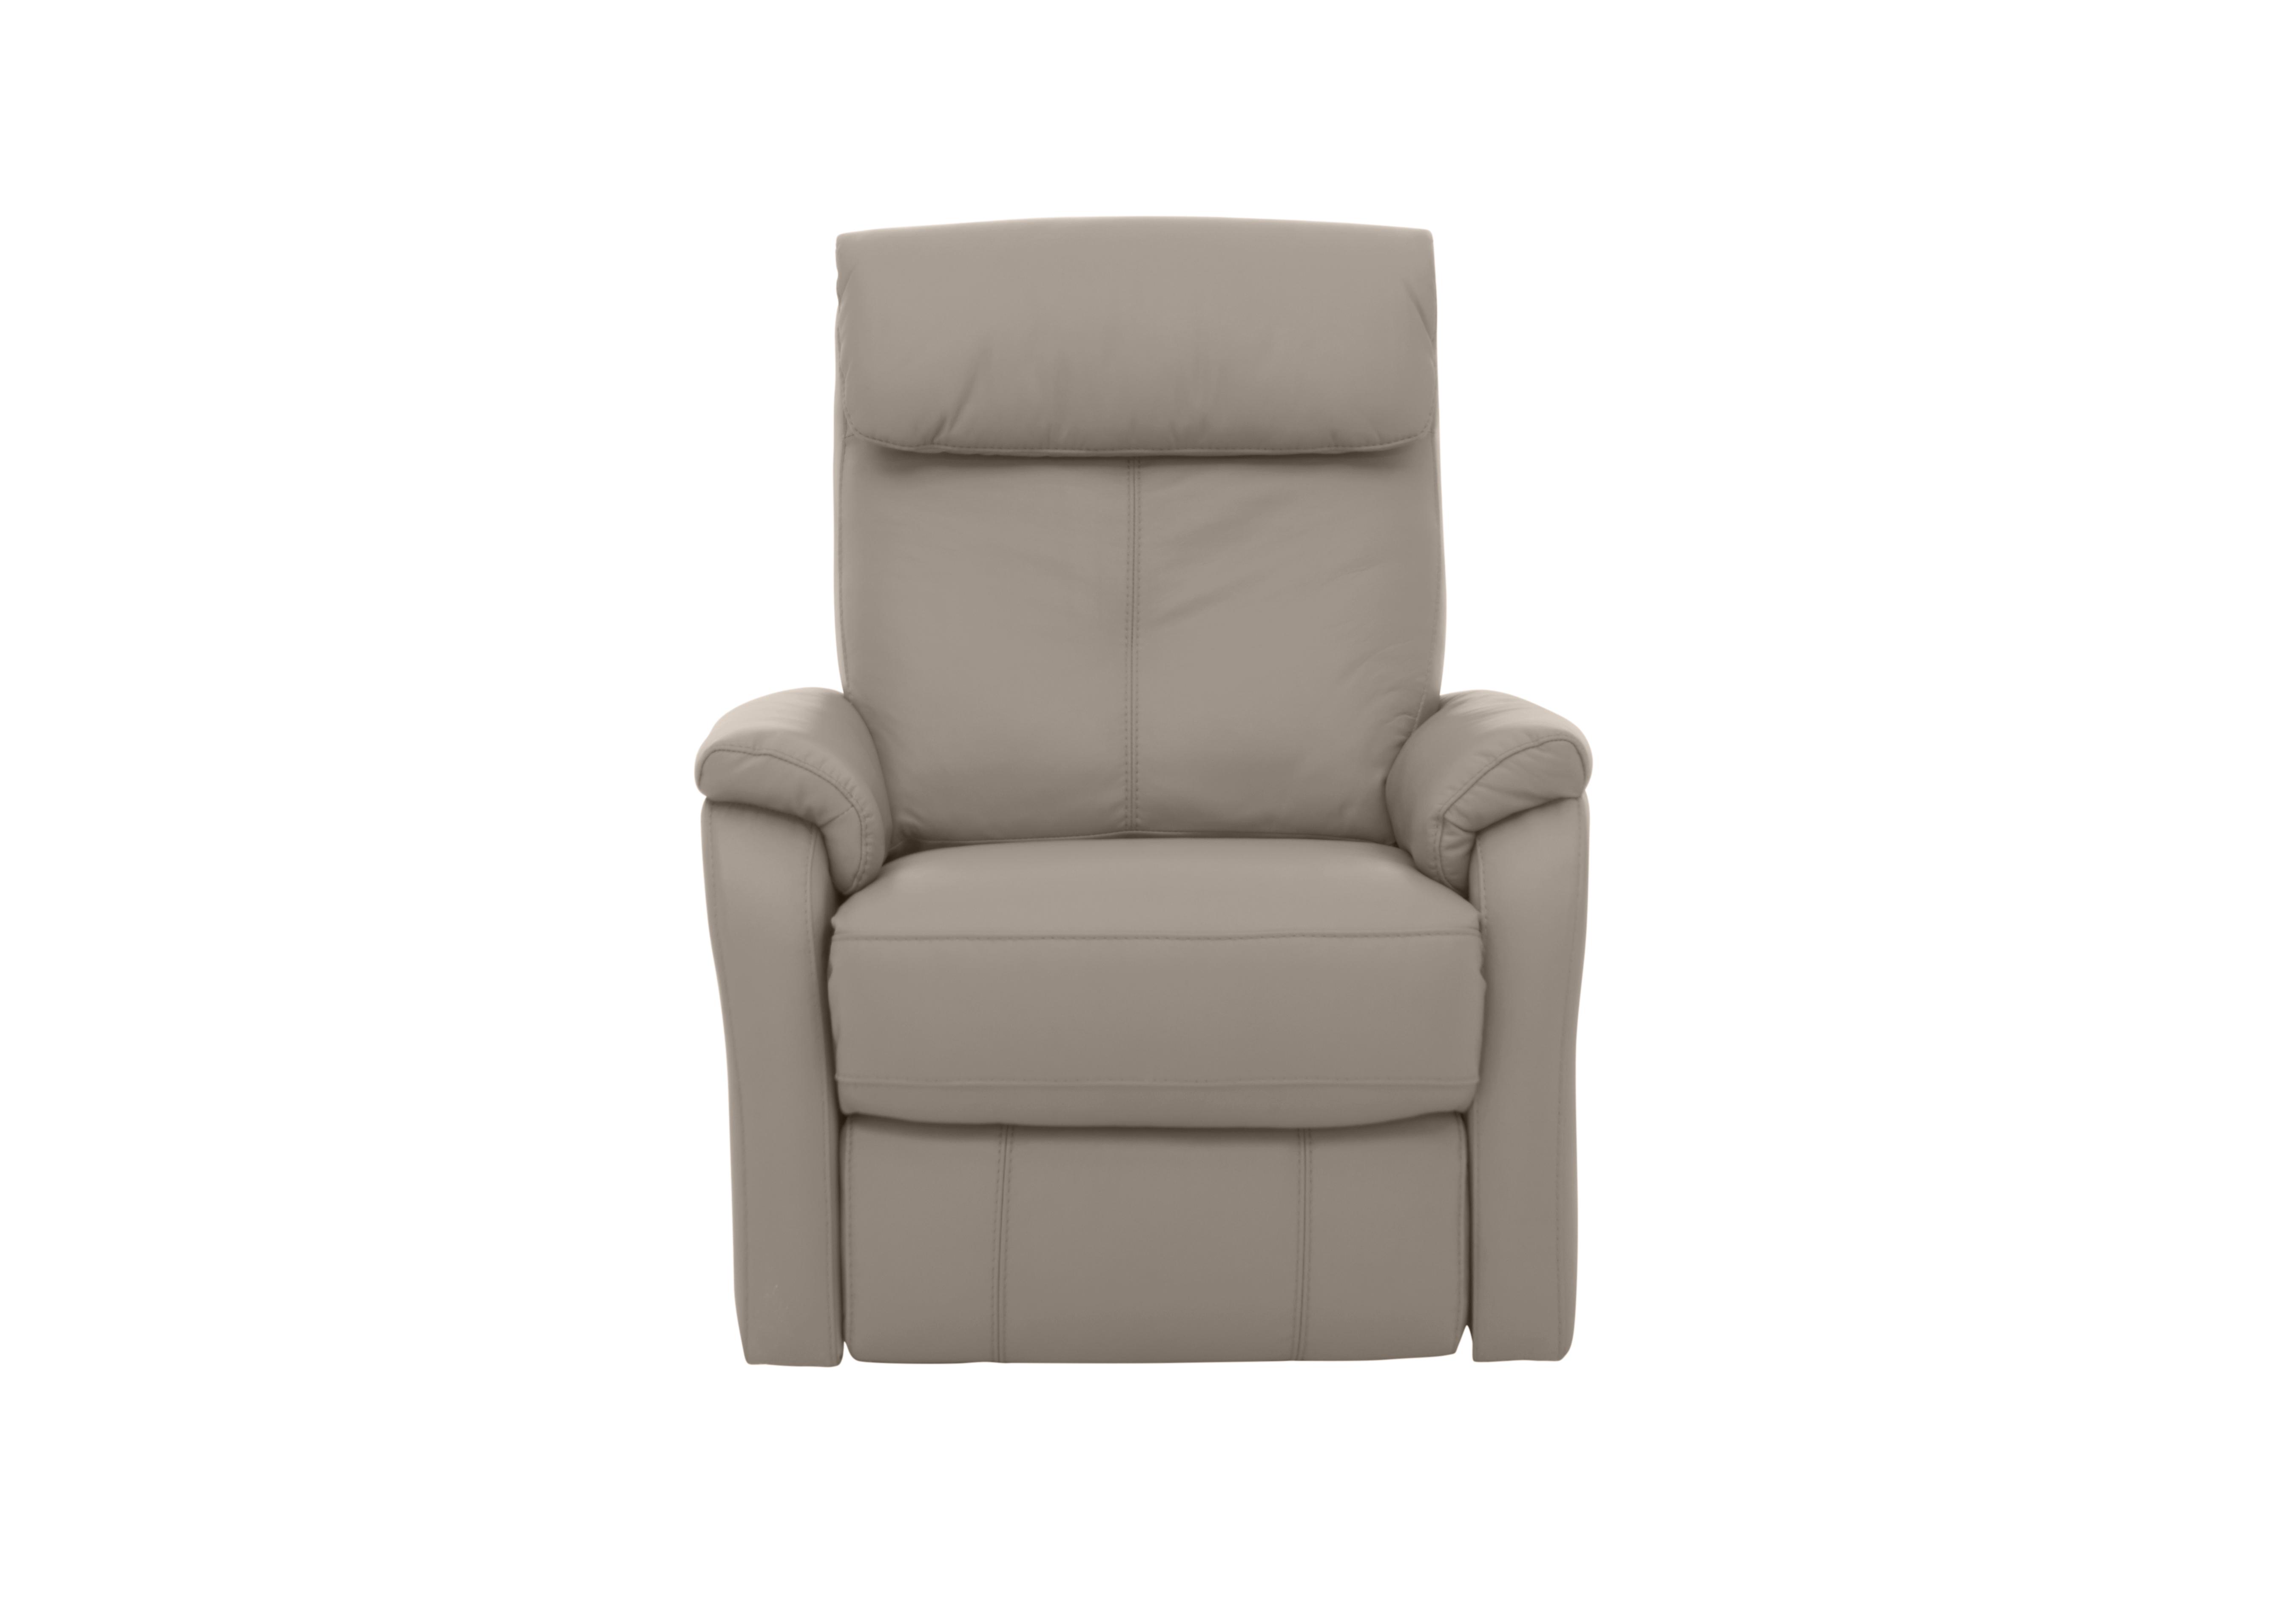 Rowan Leather Swivel Rocker Recliner Armchair in An-946b Silver Grey on Furniture Village